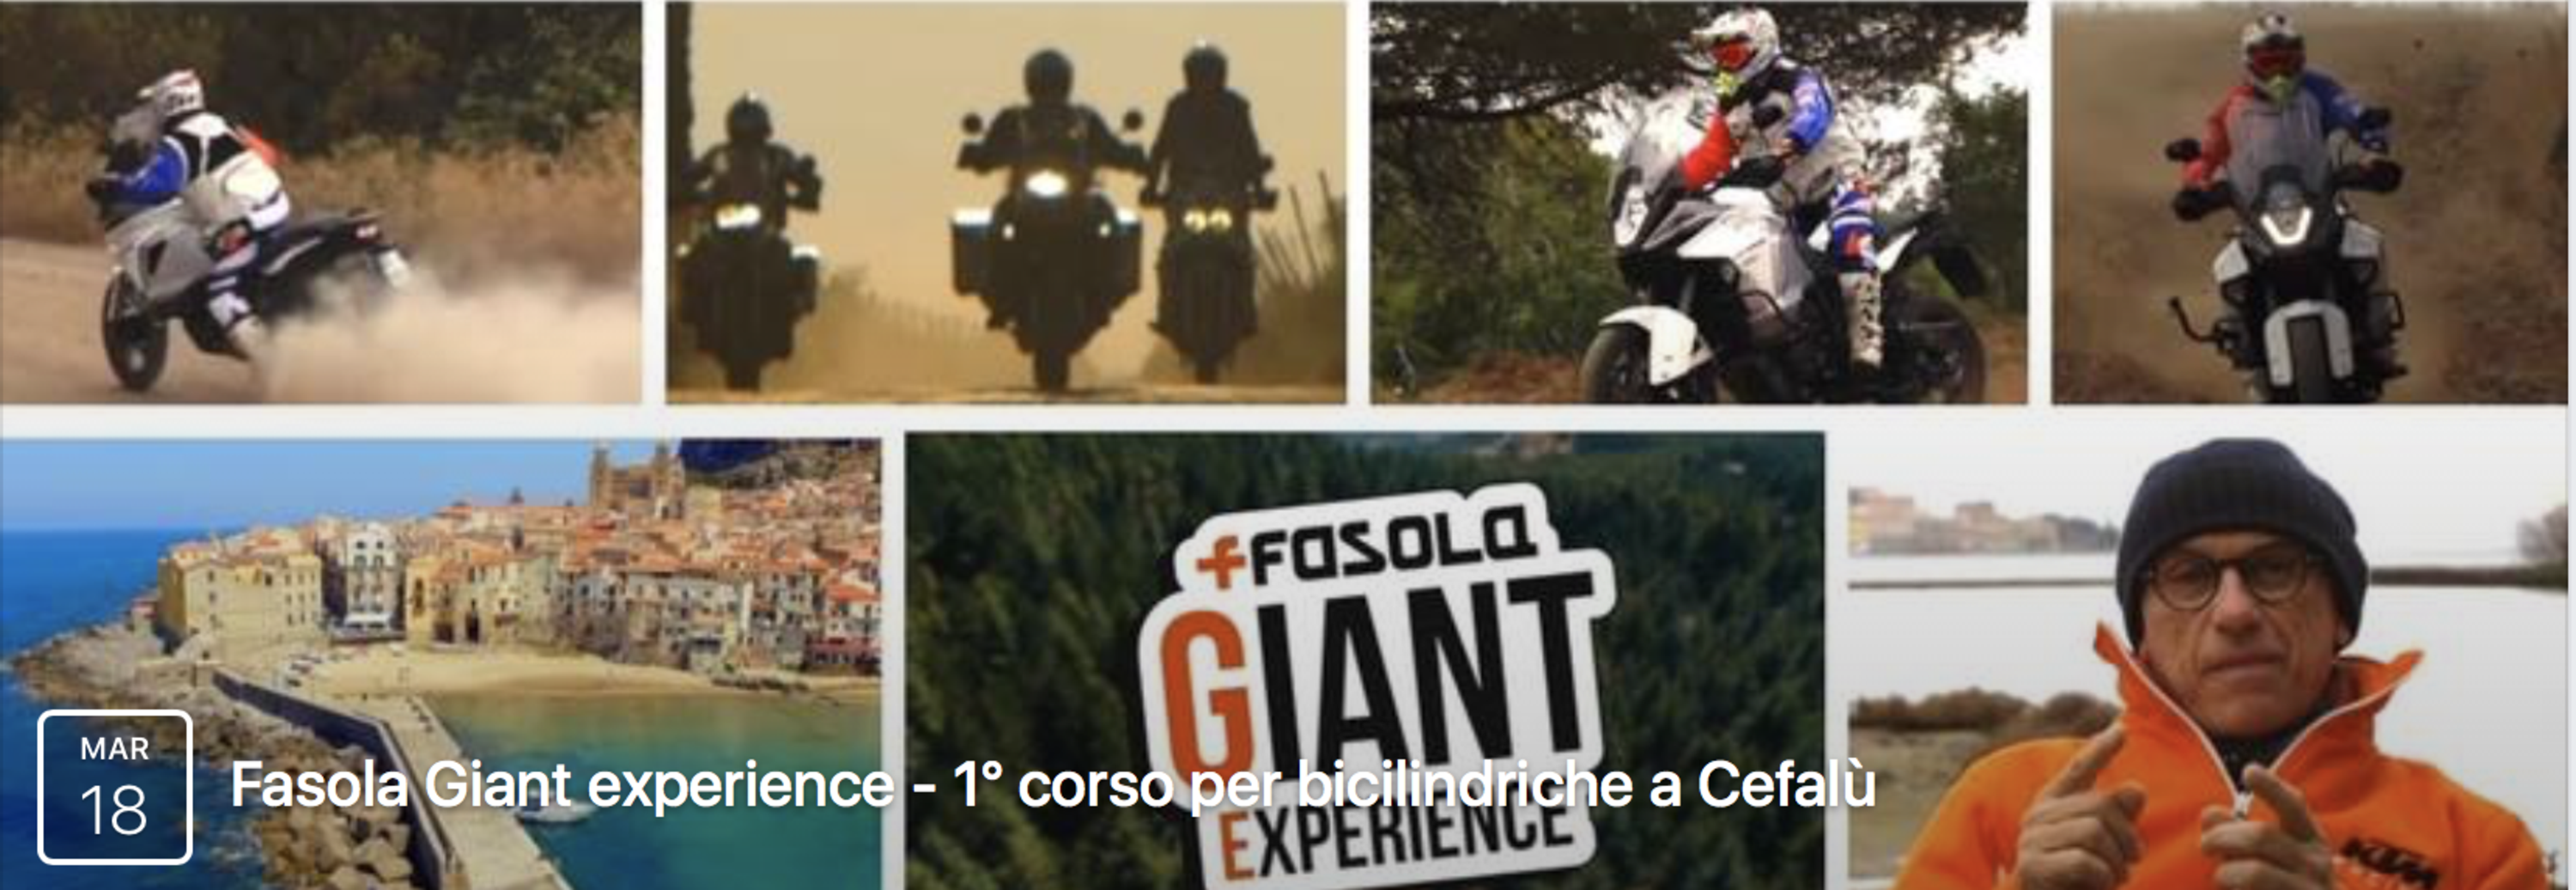 Fasola Giant Experience: primo corso per bicilindriche a Cefal&ugrave;